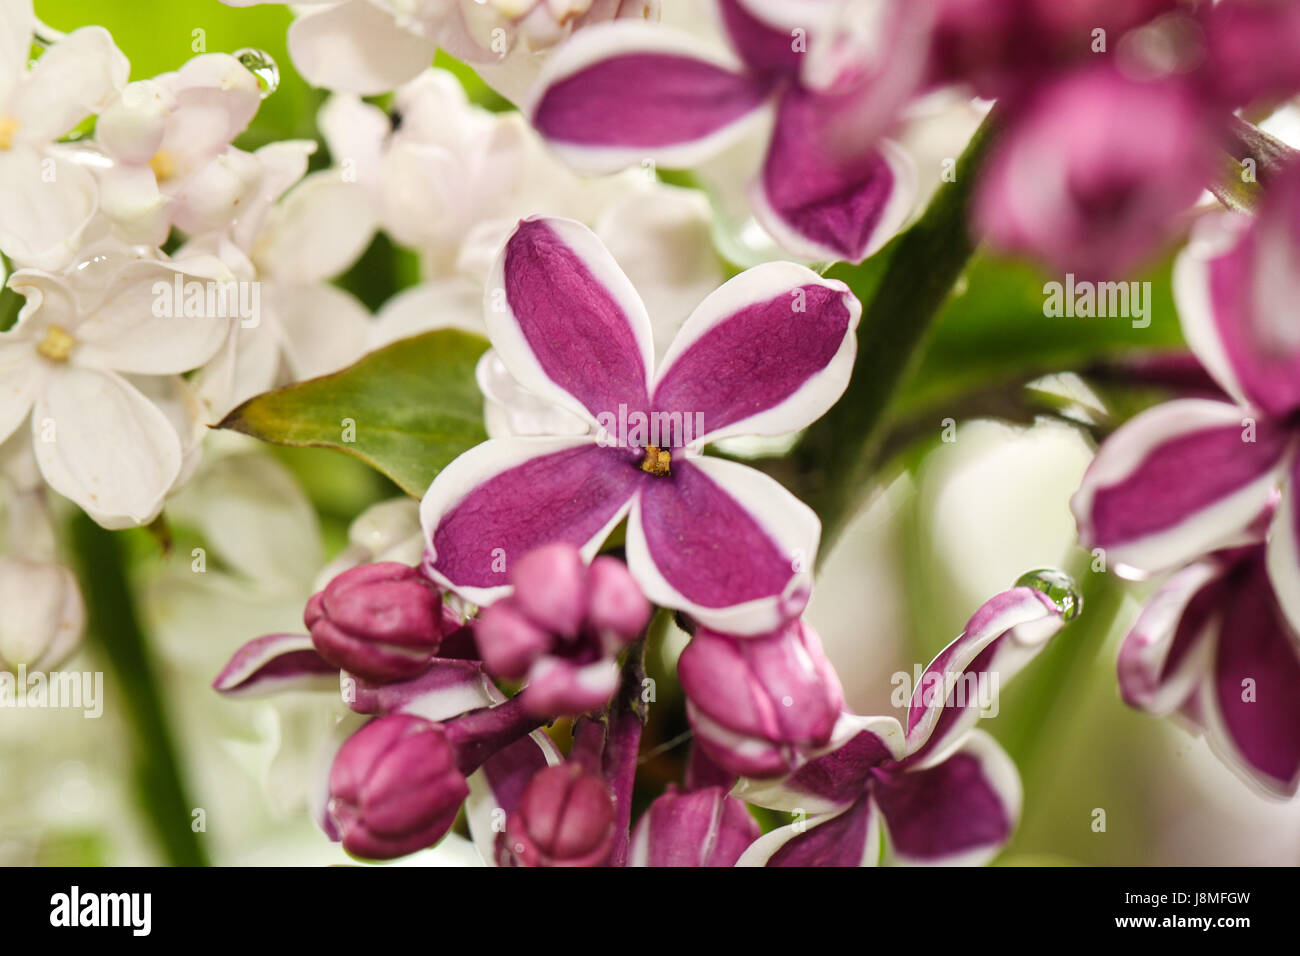 S. vulgaris. Fiori lilla. Primo piano della sensazione del varietale bicolor Deep Purple petali con bordi bianchi. Lo stesso impianto anche visualizzati petali bianco puro. Foto Stock